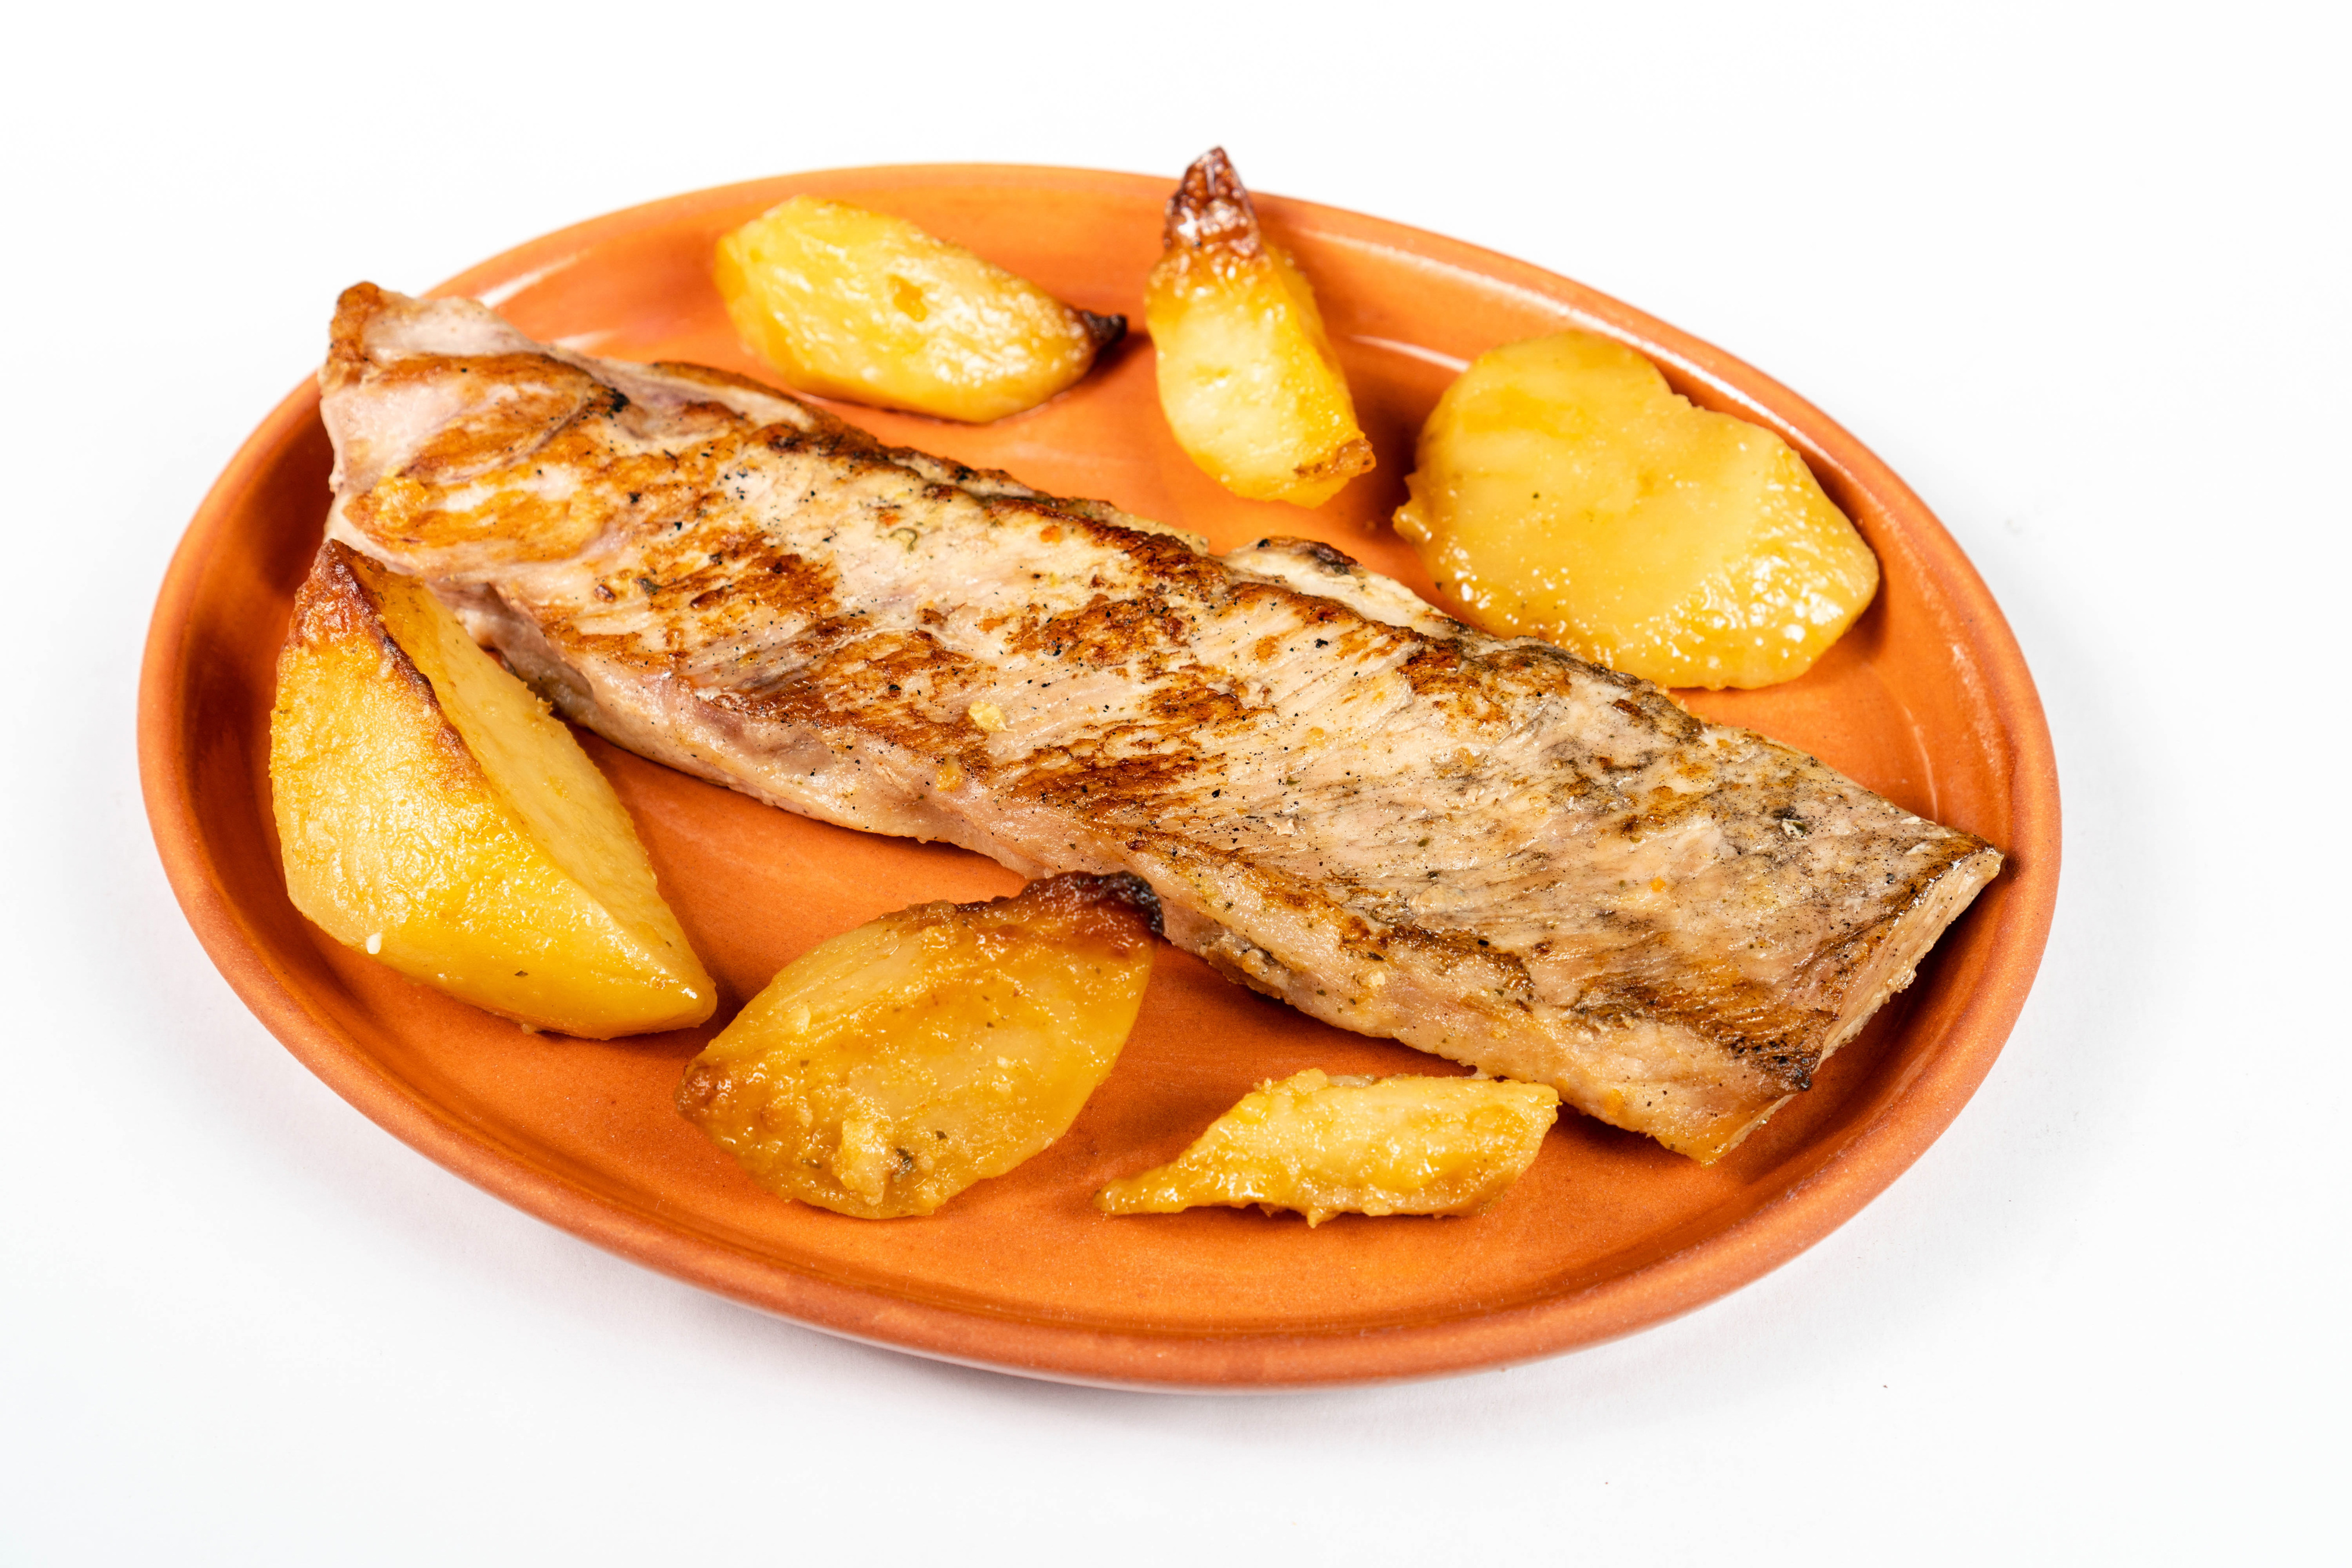 Zastaki.com - Кусок запеченной рыбы на тарелке с картофелем 